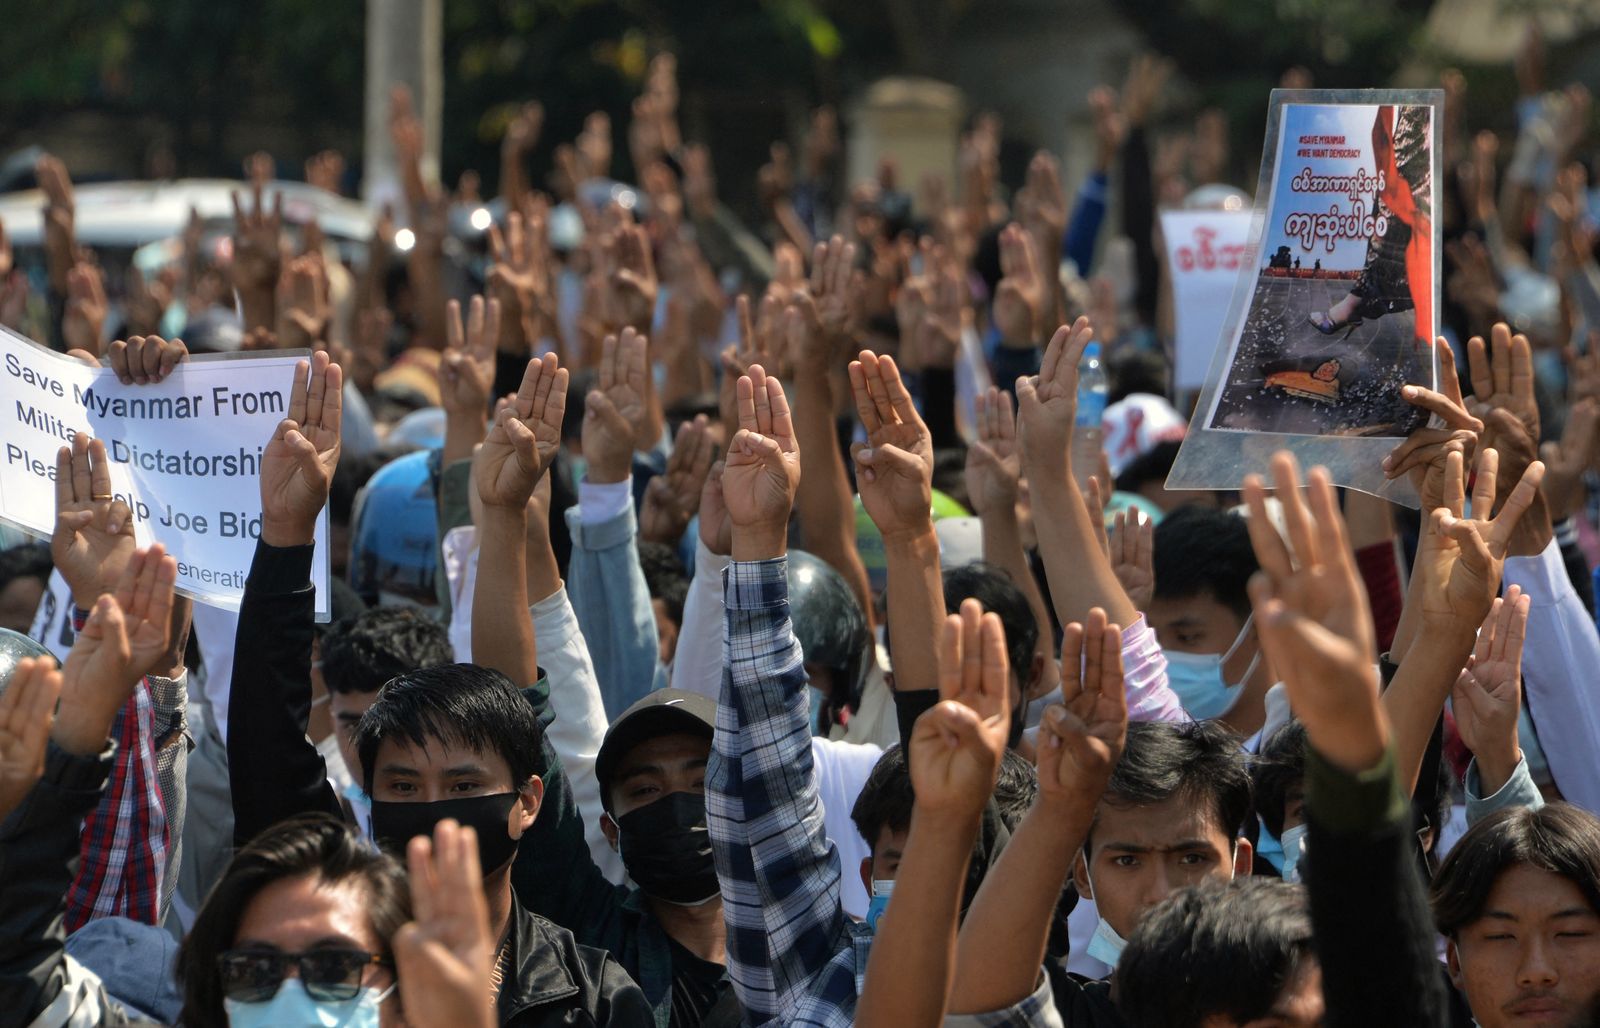 متظاهرون يرفعون شعار المقاومة بأصابعهم الثلاثة خلال مظاهرة ضد الانقلاب العسكري في مدينة نايبيداو - 12 فبراير 2021  - AFP